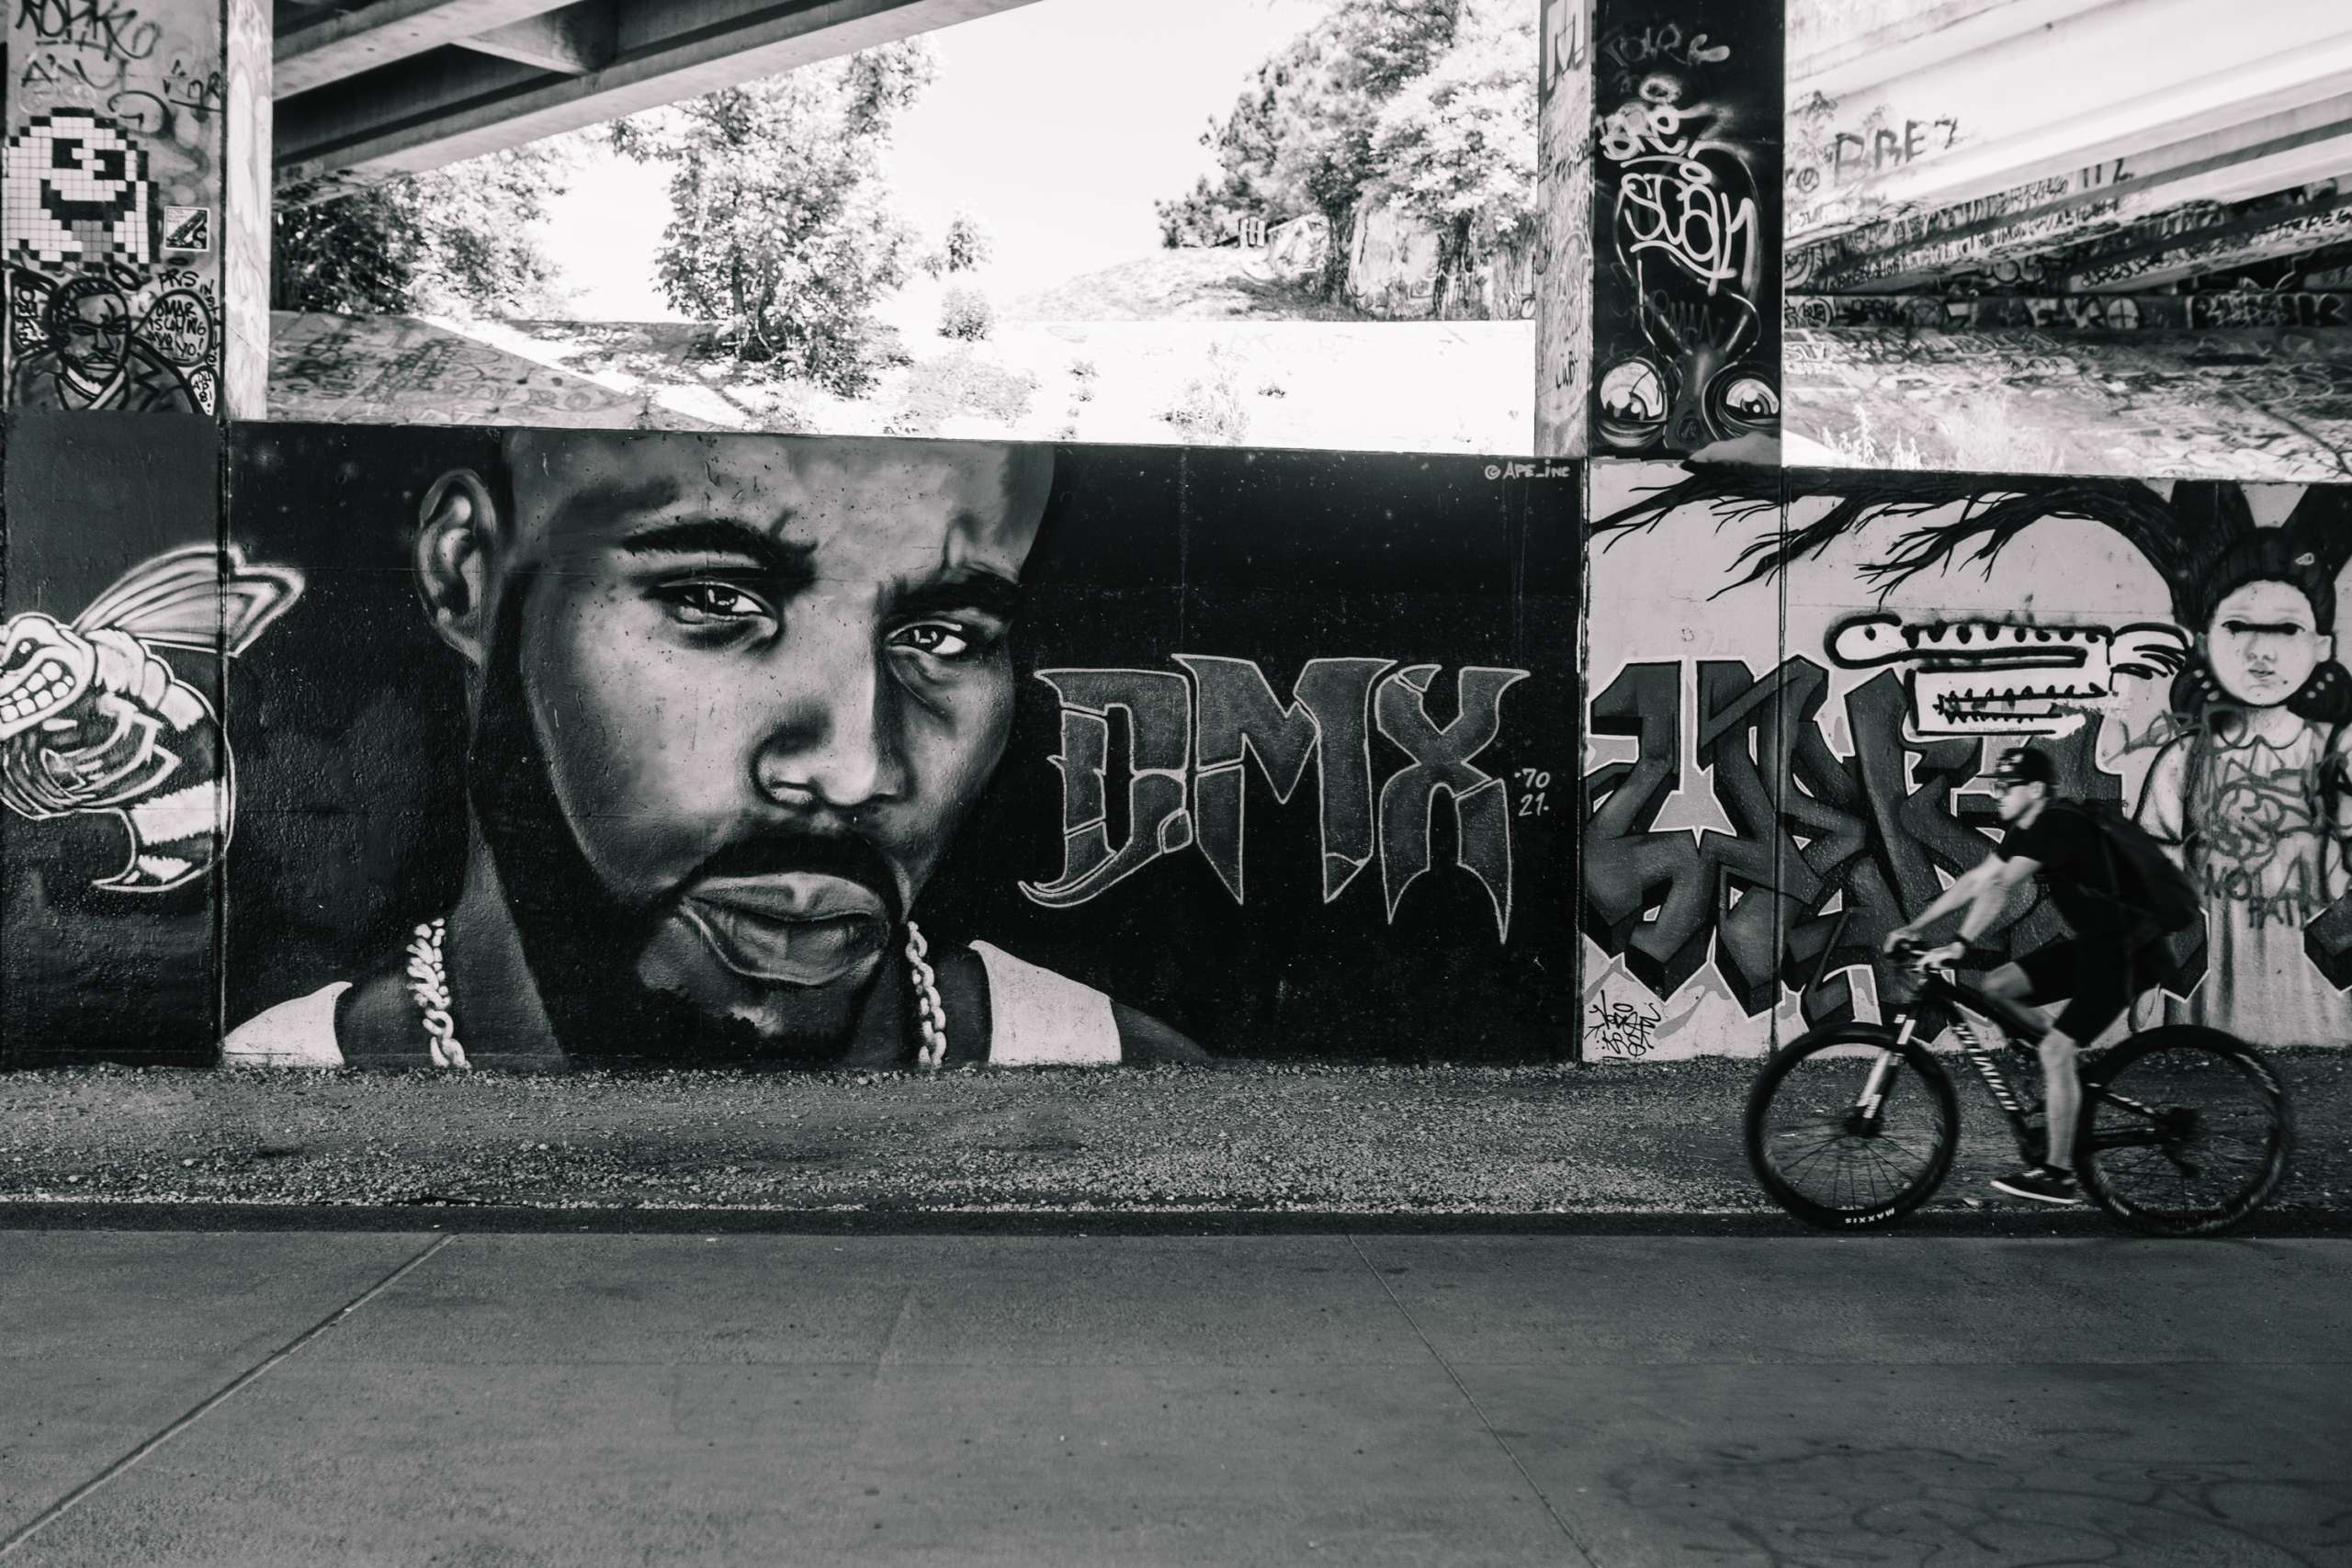 A graffiti portrait of DMX in black and white.